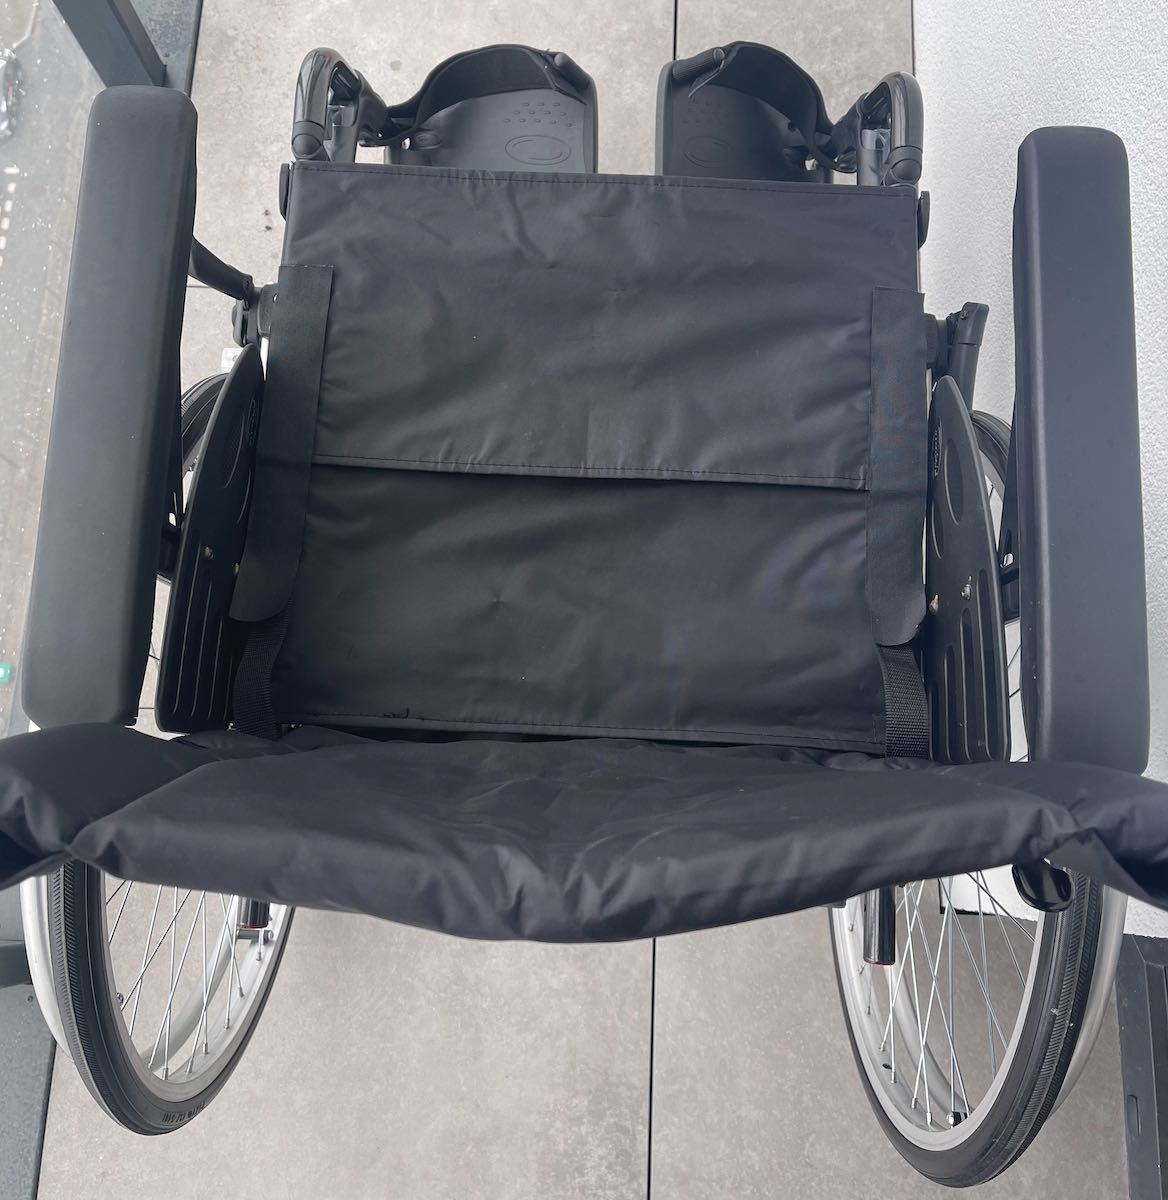 wózek inwalidzki dla niepełnosprawnych Invacare Action 2 ng